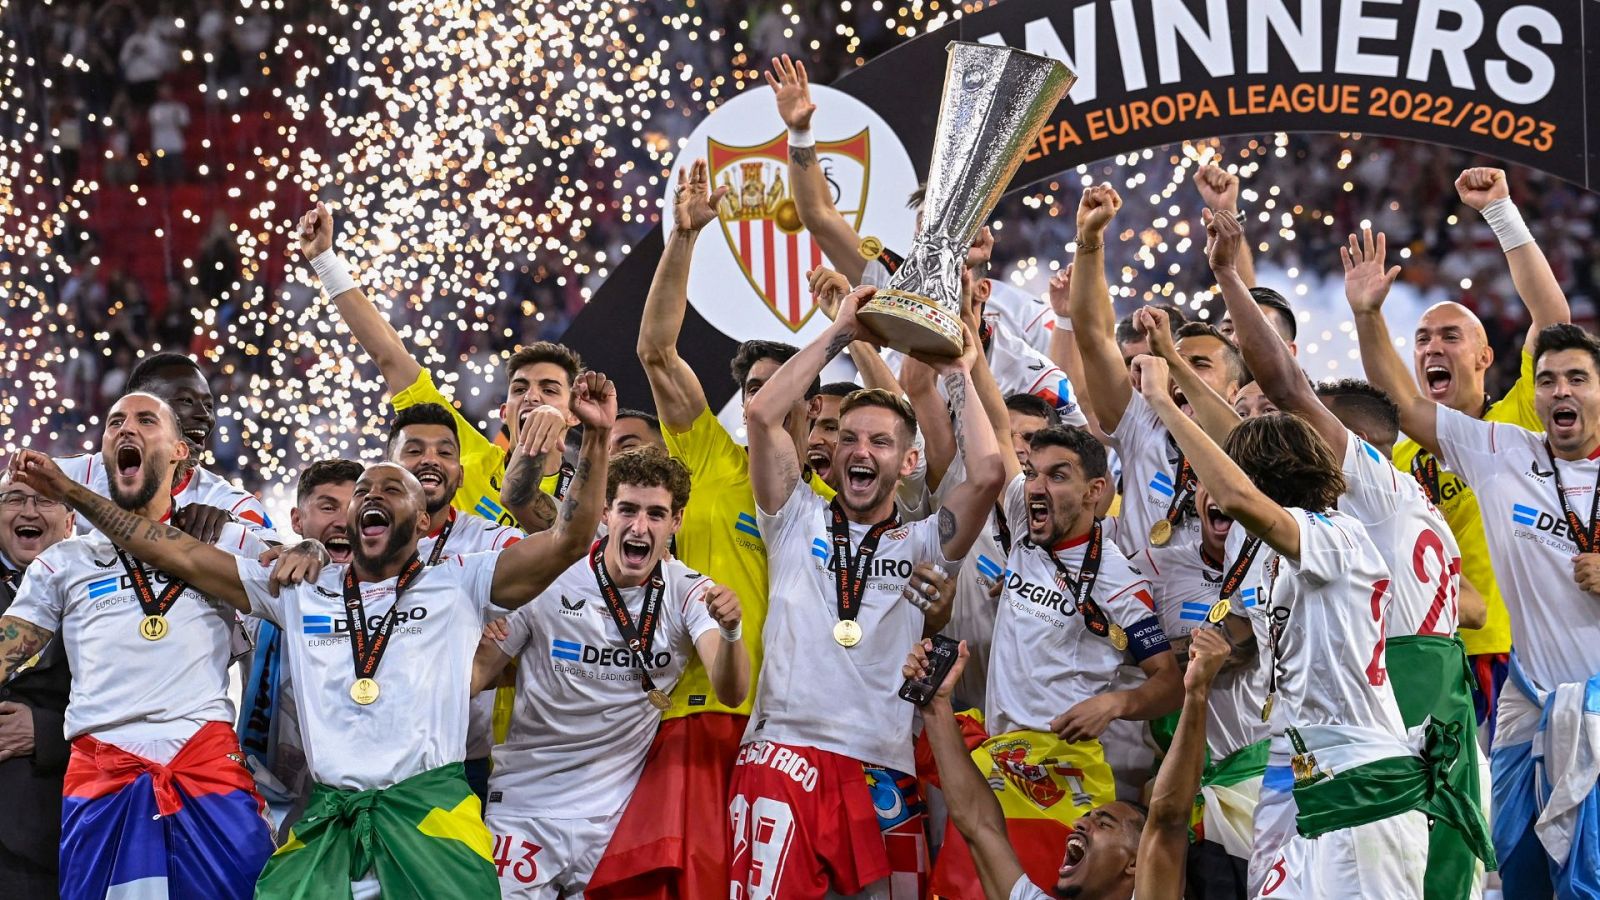 El Sevilla, campeón de la Europa League: ganan su séptima final ante la Roma de Mourinho, esta vez - Ver ahora